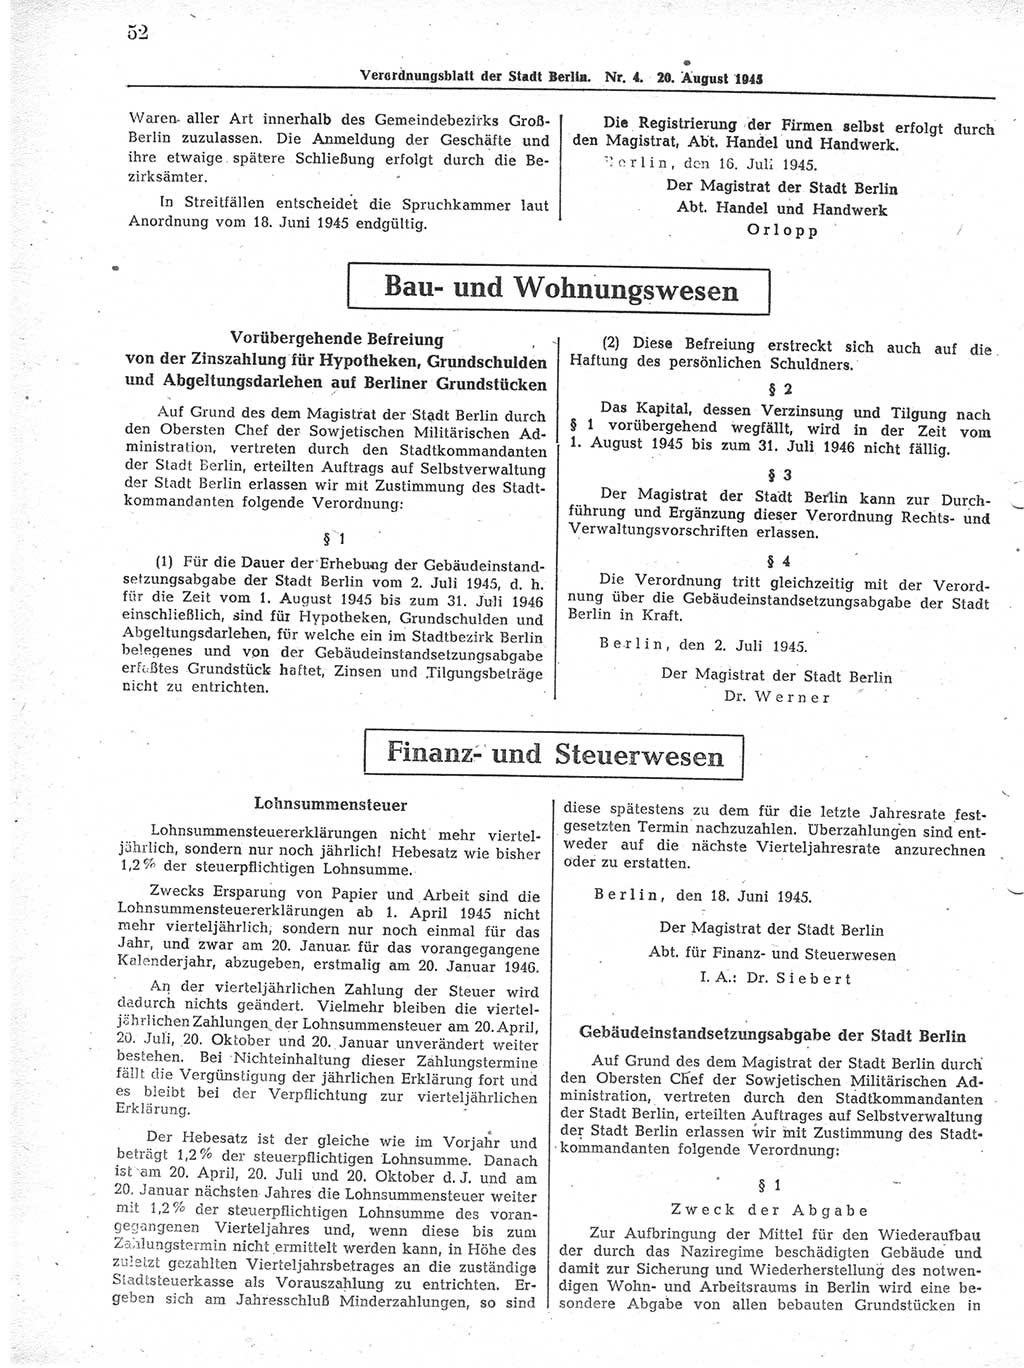 Verordnungsblatt (VOBl.) der Stadt Berlin 1945, Seite 52 (VOBl. Bln. 1945, S. 52)